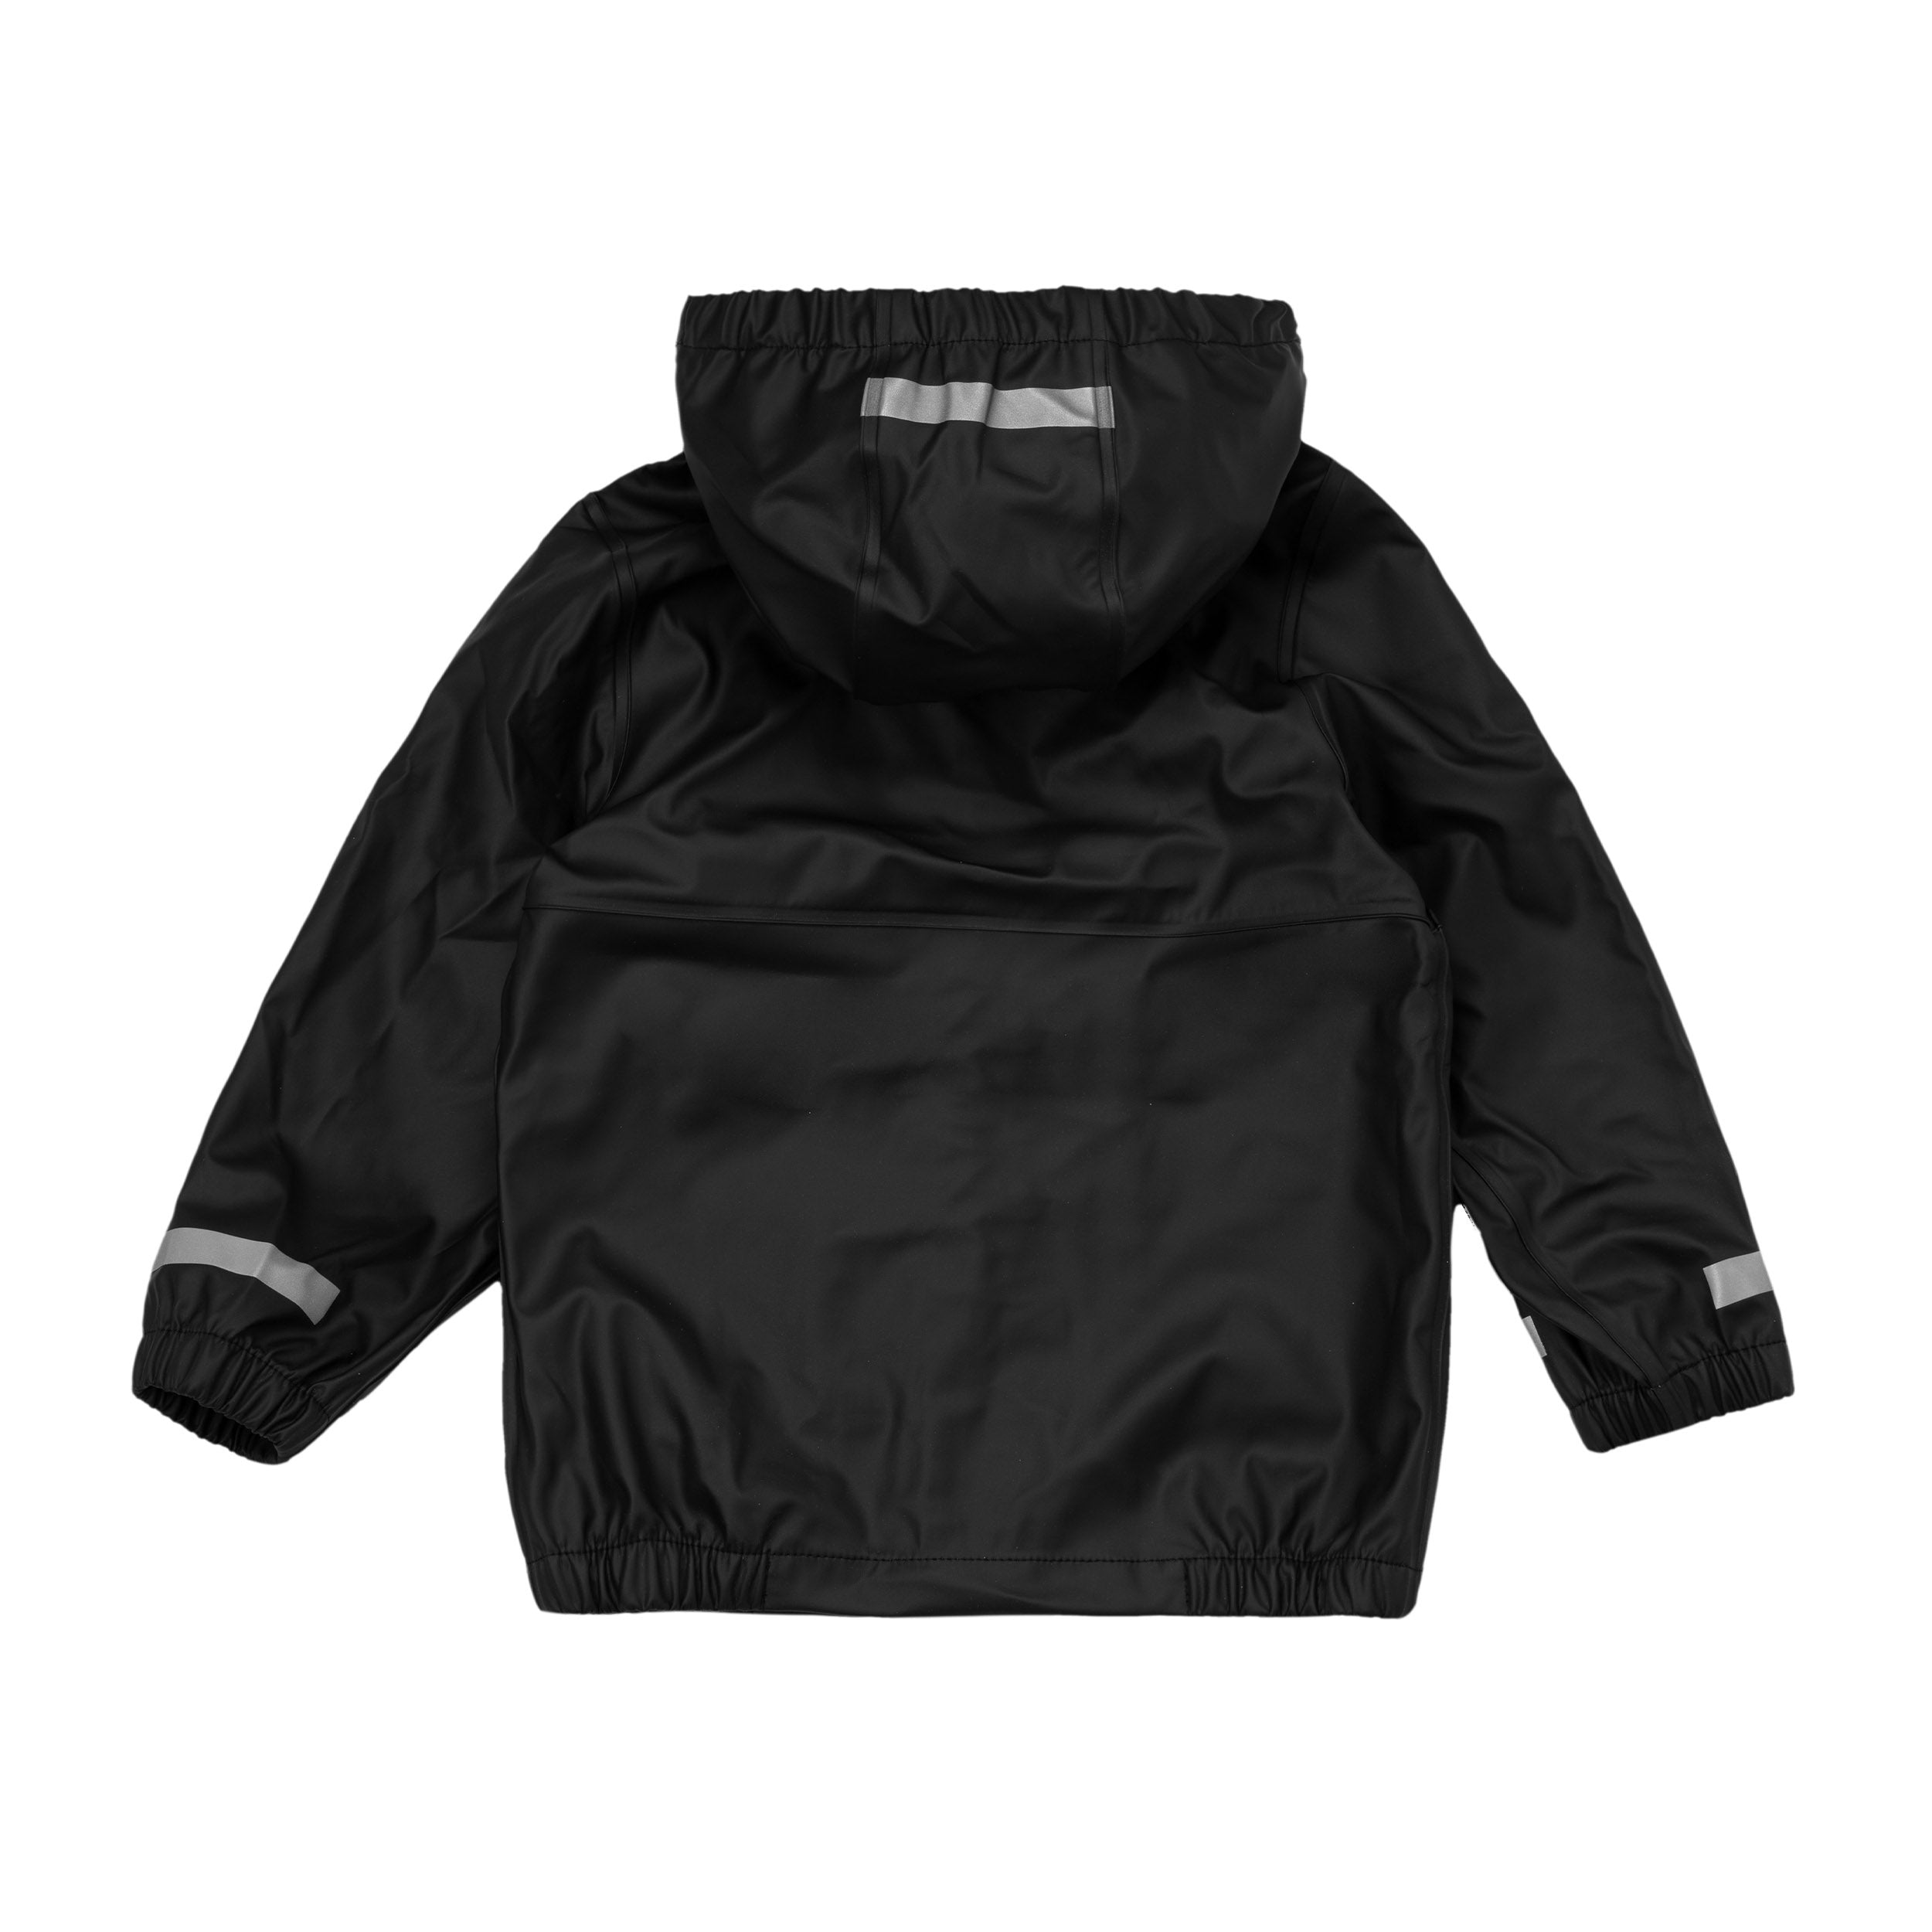 K's Rainwear Bundle Black